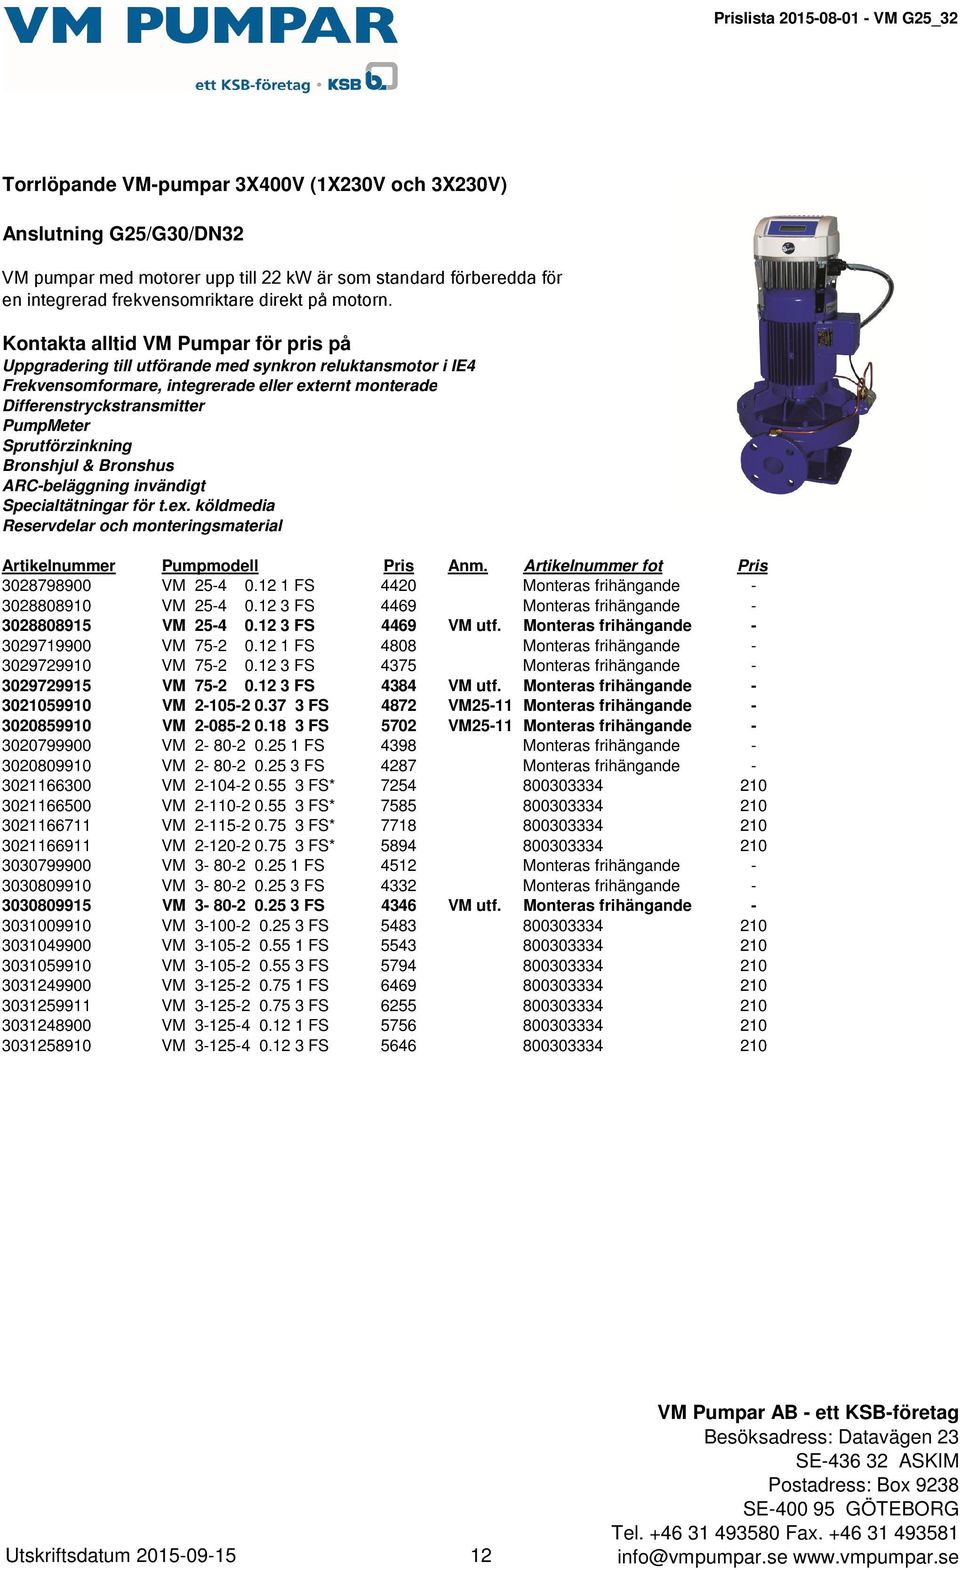 Kontakta alltid VM Pumpar för pris på Uppgradering till utförande med synkron reluktansmotor i IE4 Frekvensomformare, integrerade eller externt monterade Differenstryckstransmitter PumpMeter